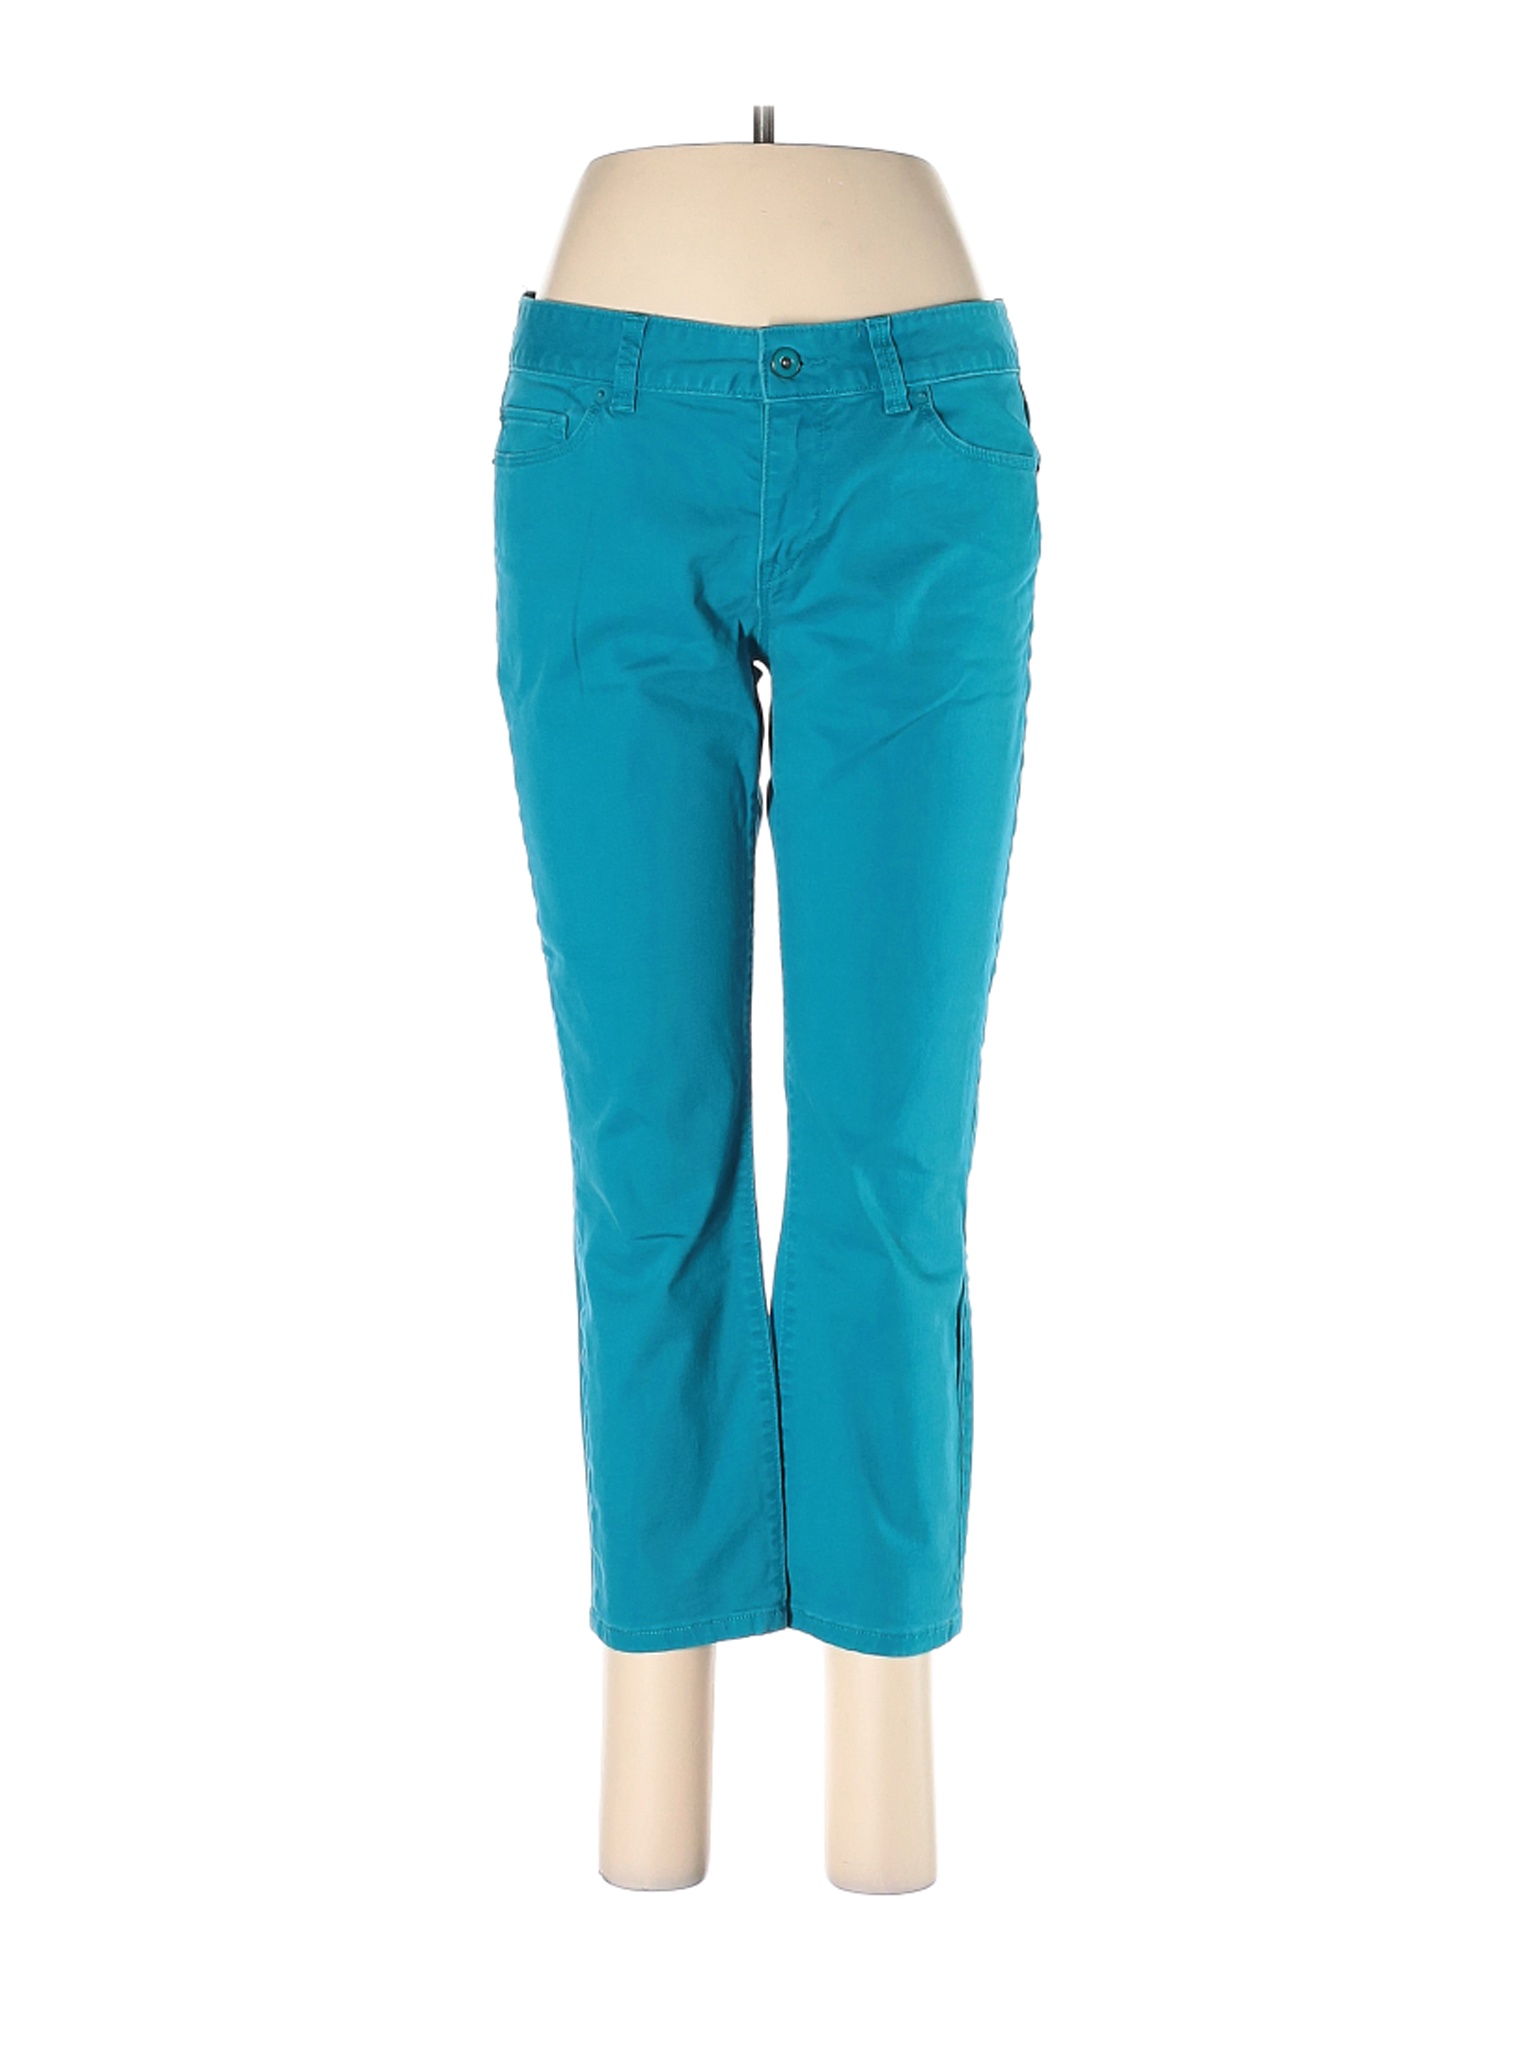 Ann Taylor LOFT Women Green Jeans 6 | eBay